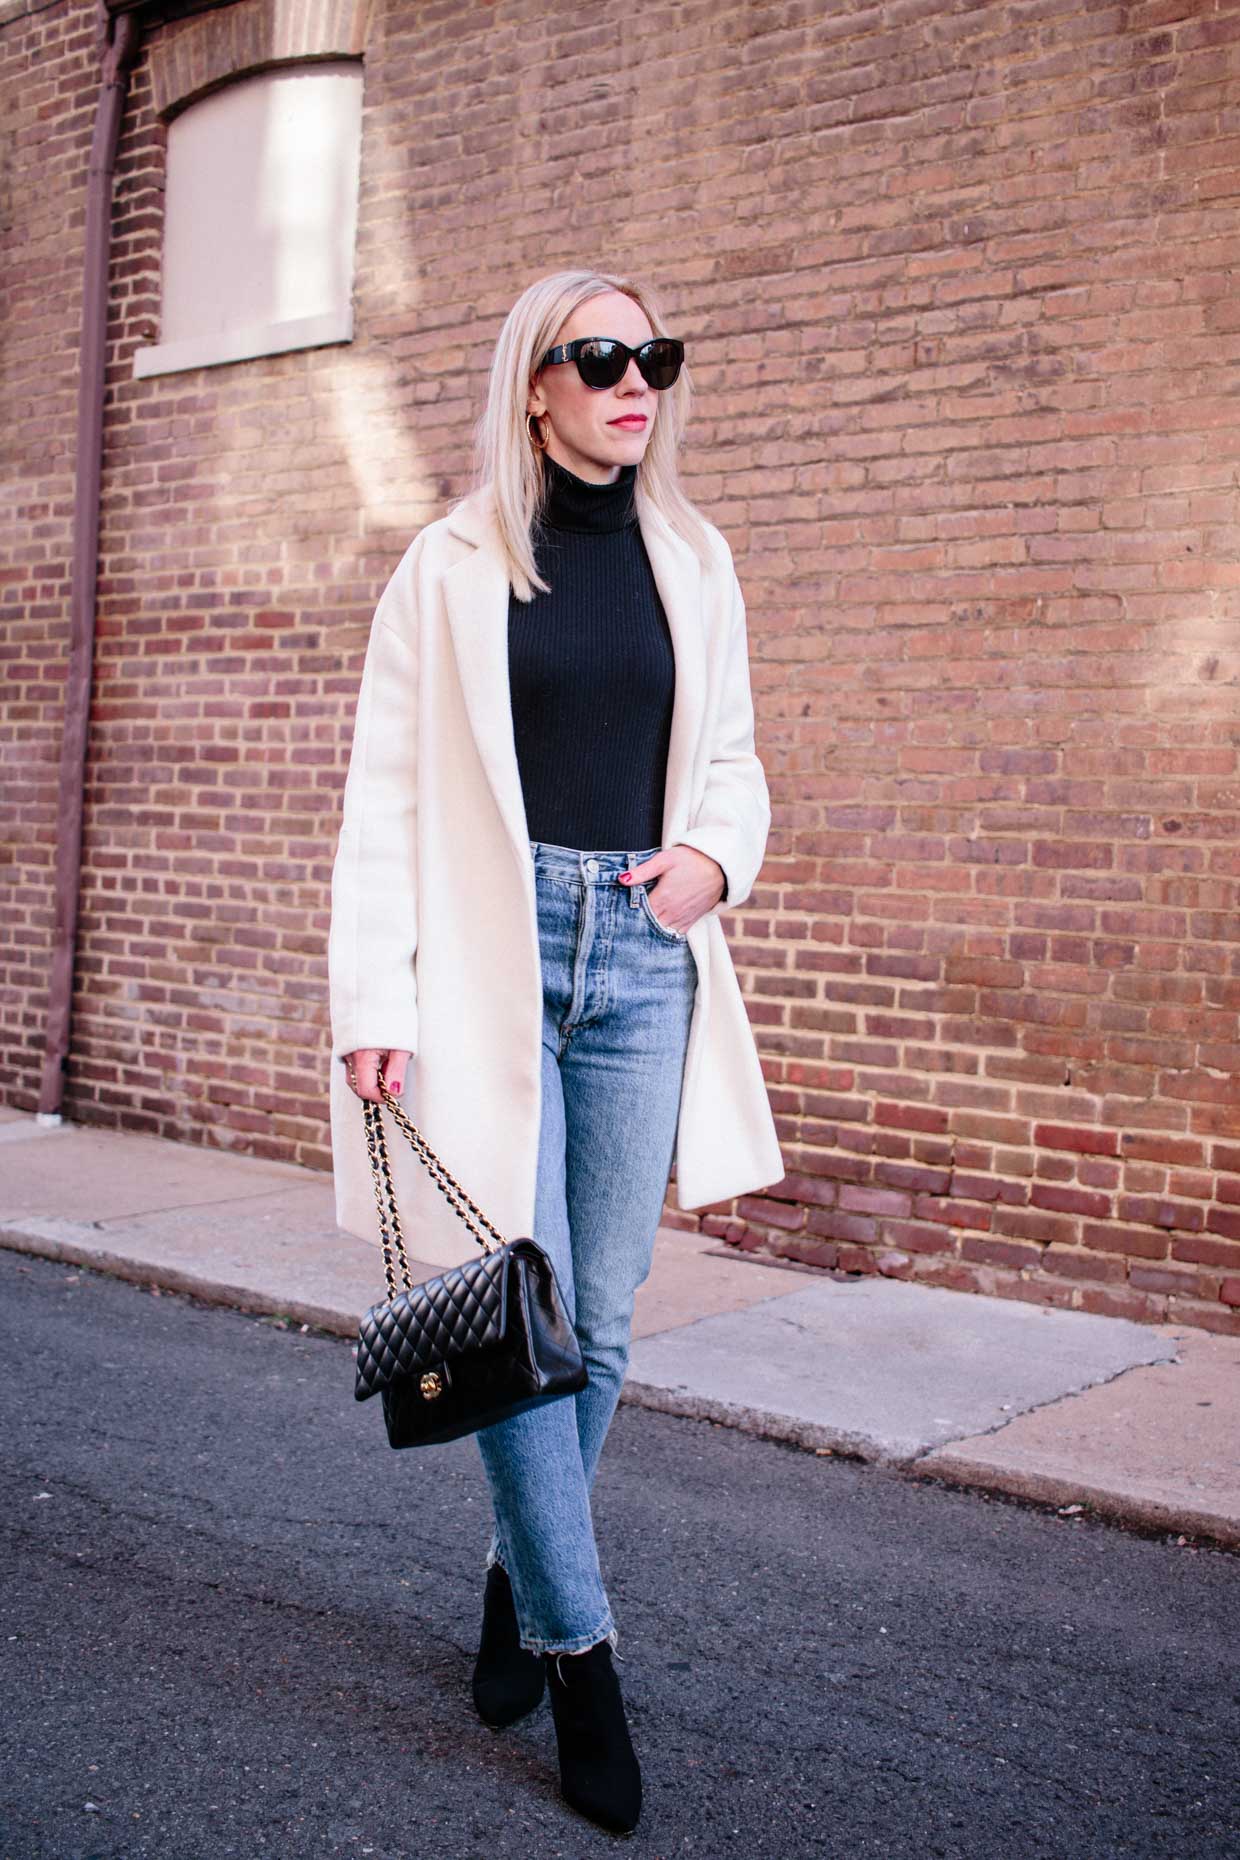 Meagan Brandon fashion blogger of Meagan's Moda compares Spanx